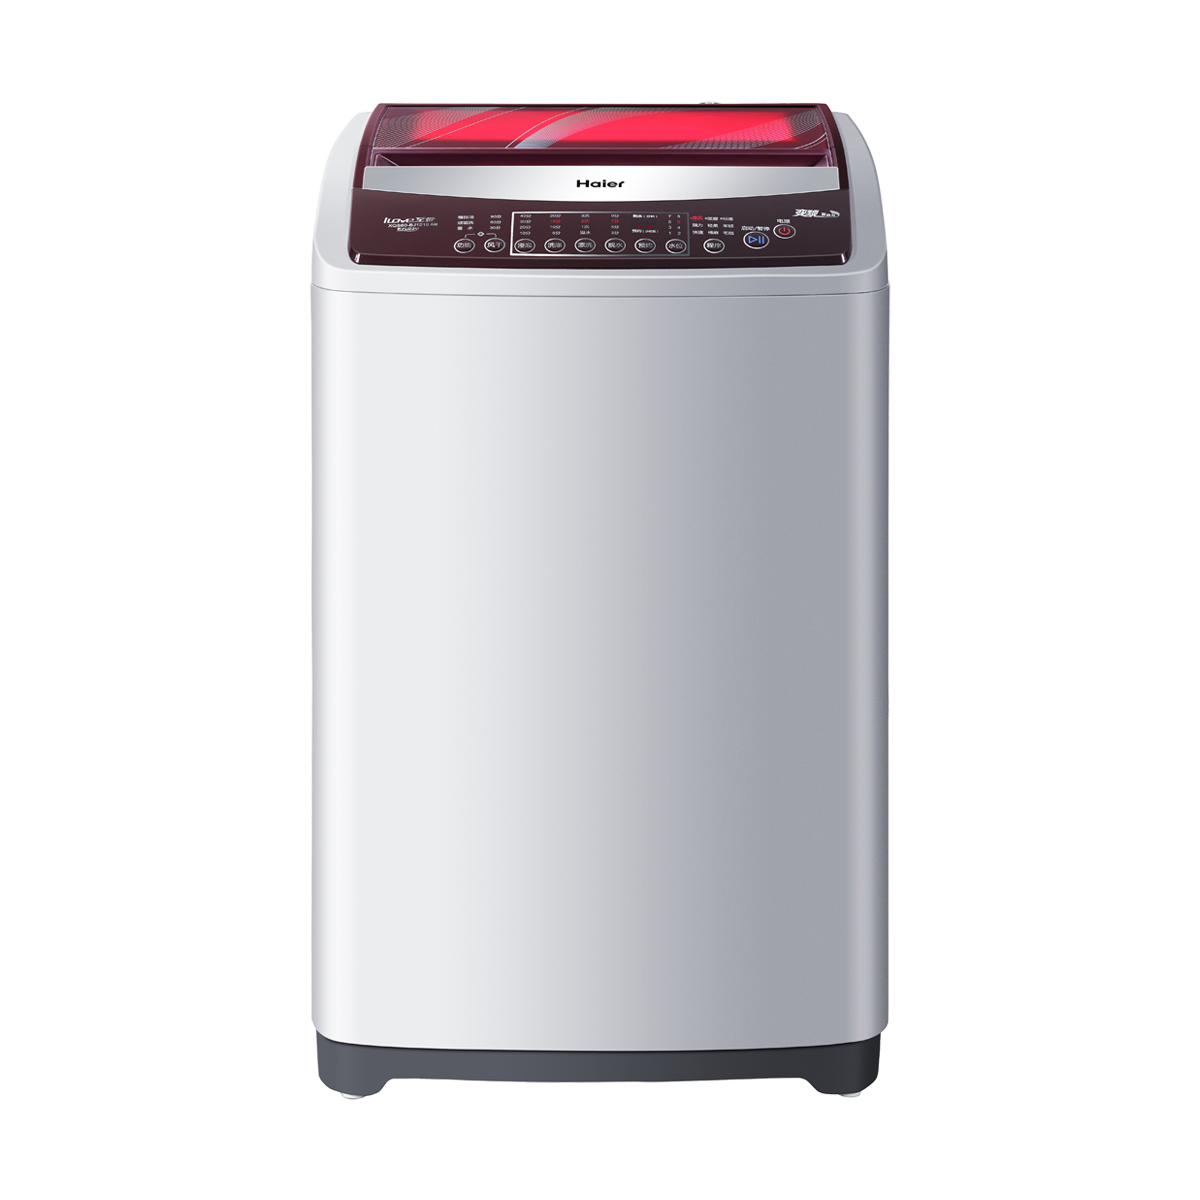 海尔Haier洗衣机 XQS60-BJ1218(AM) 说明书